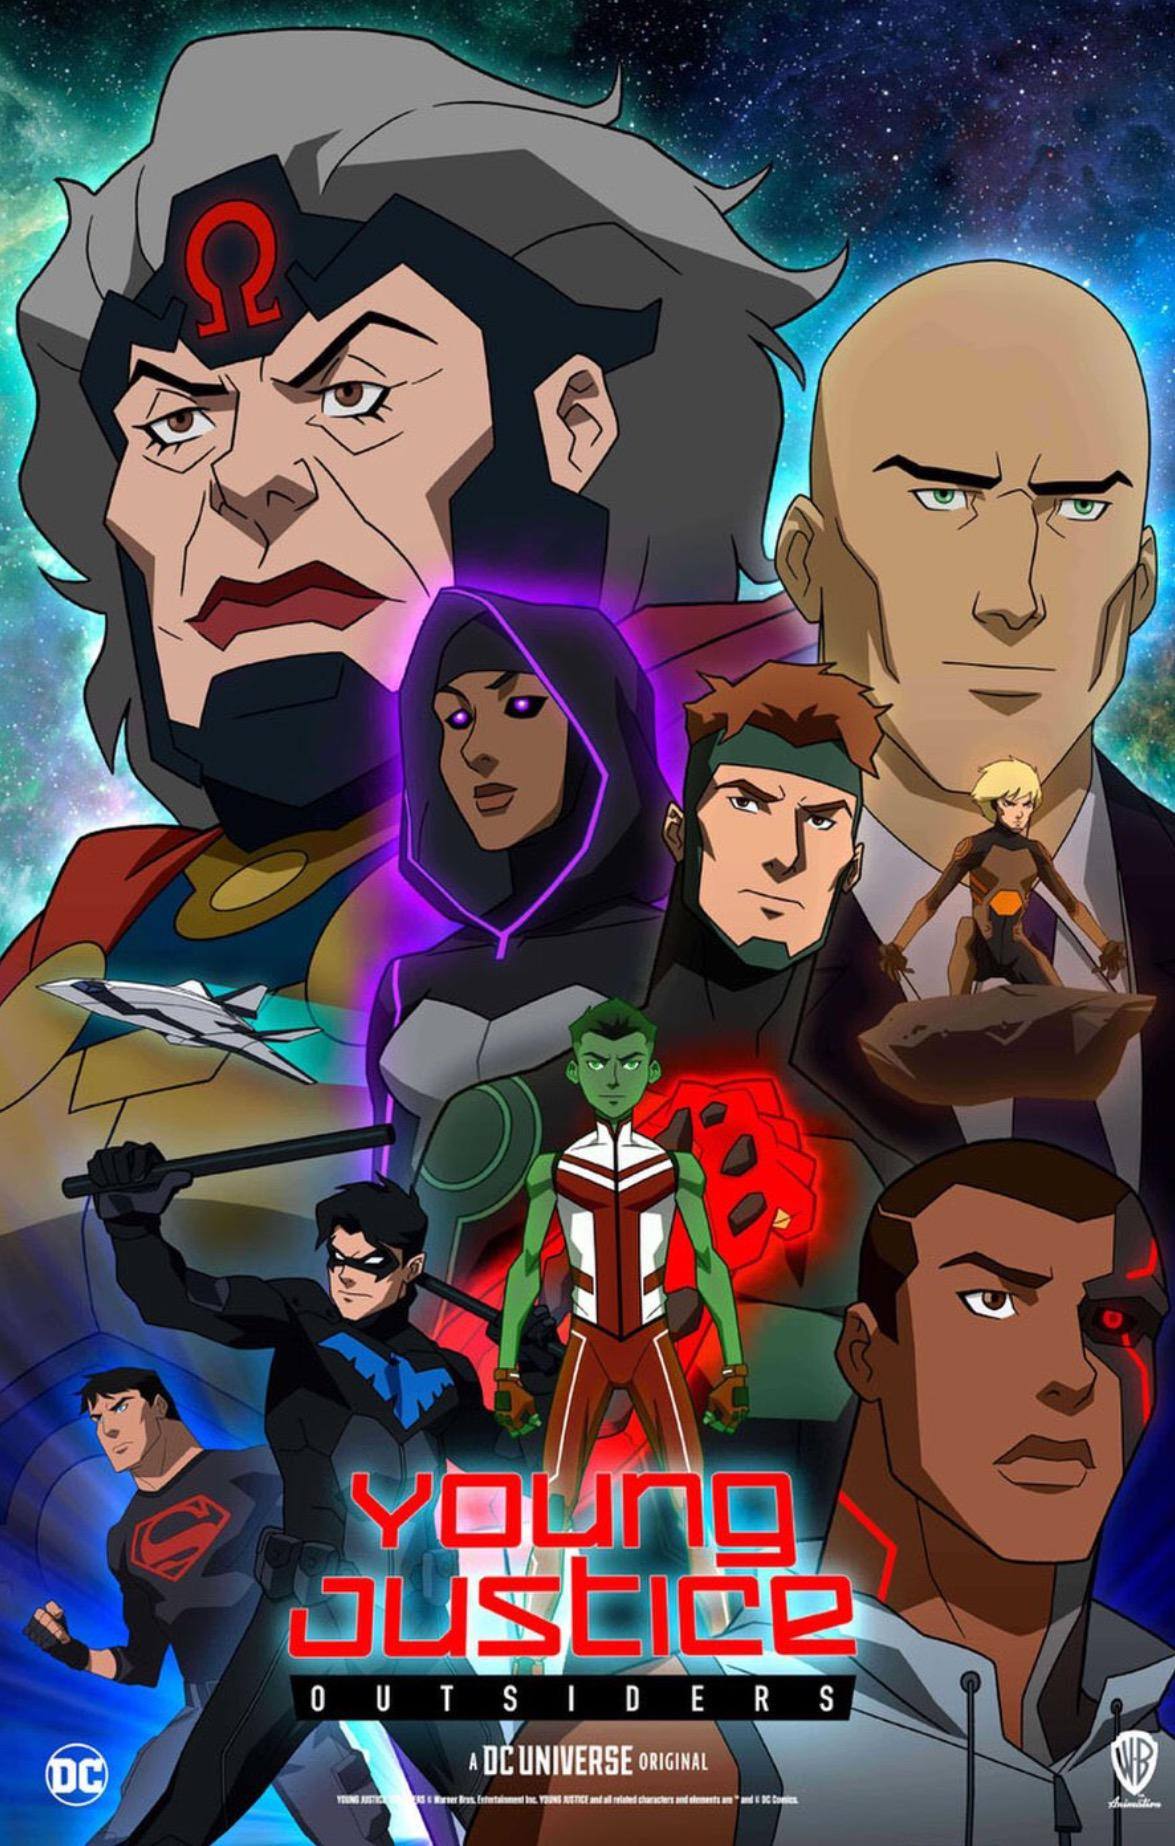 Titans (Temporada 3), Batpedia